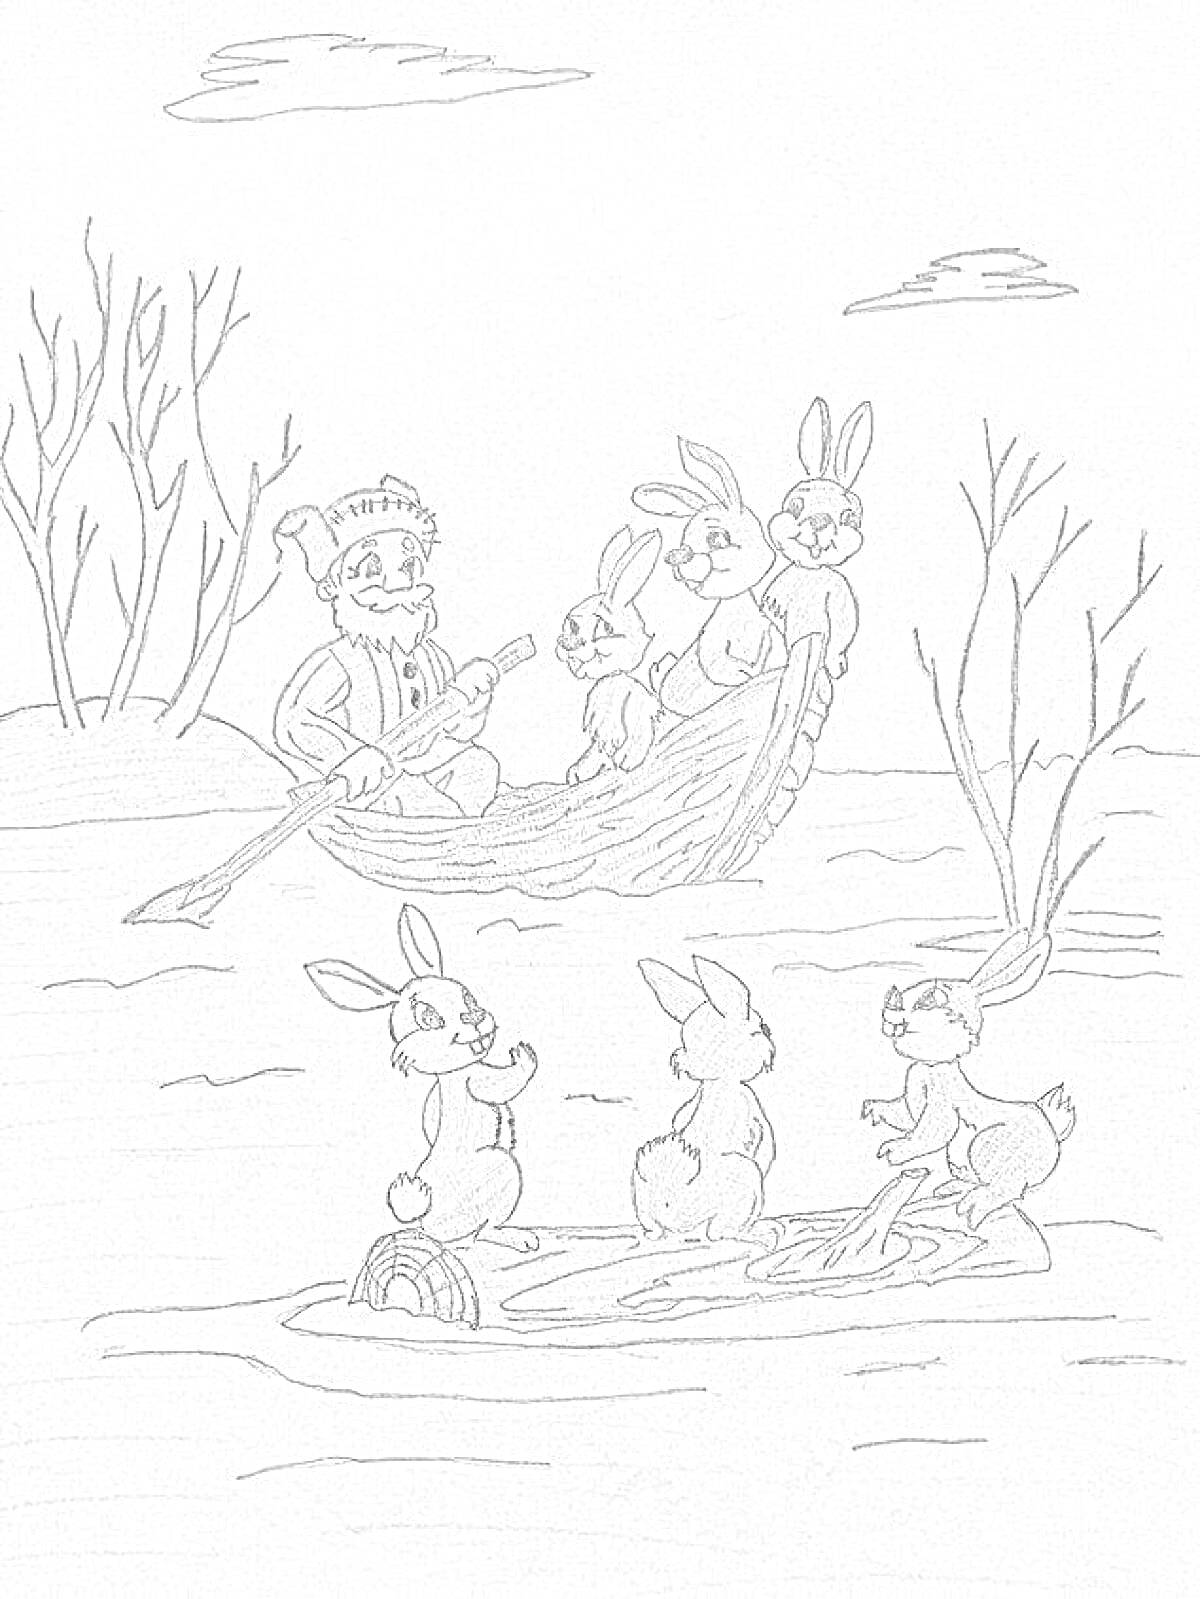 Раскраска Дед Мазай в лодке с четырьмя зайцами, два дерева и четыре зайца на плавающем бревне